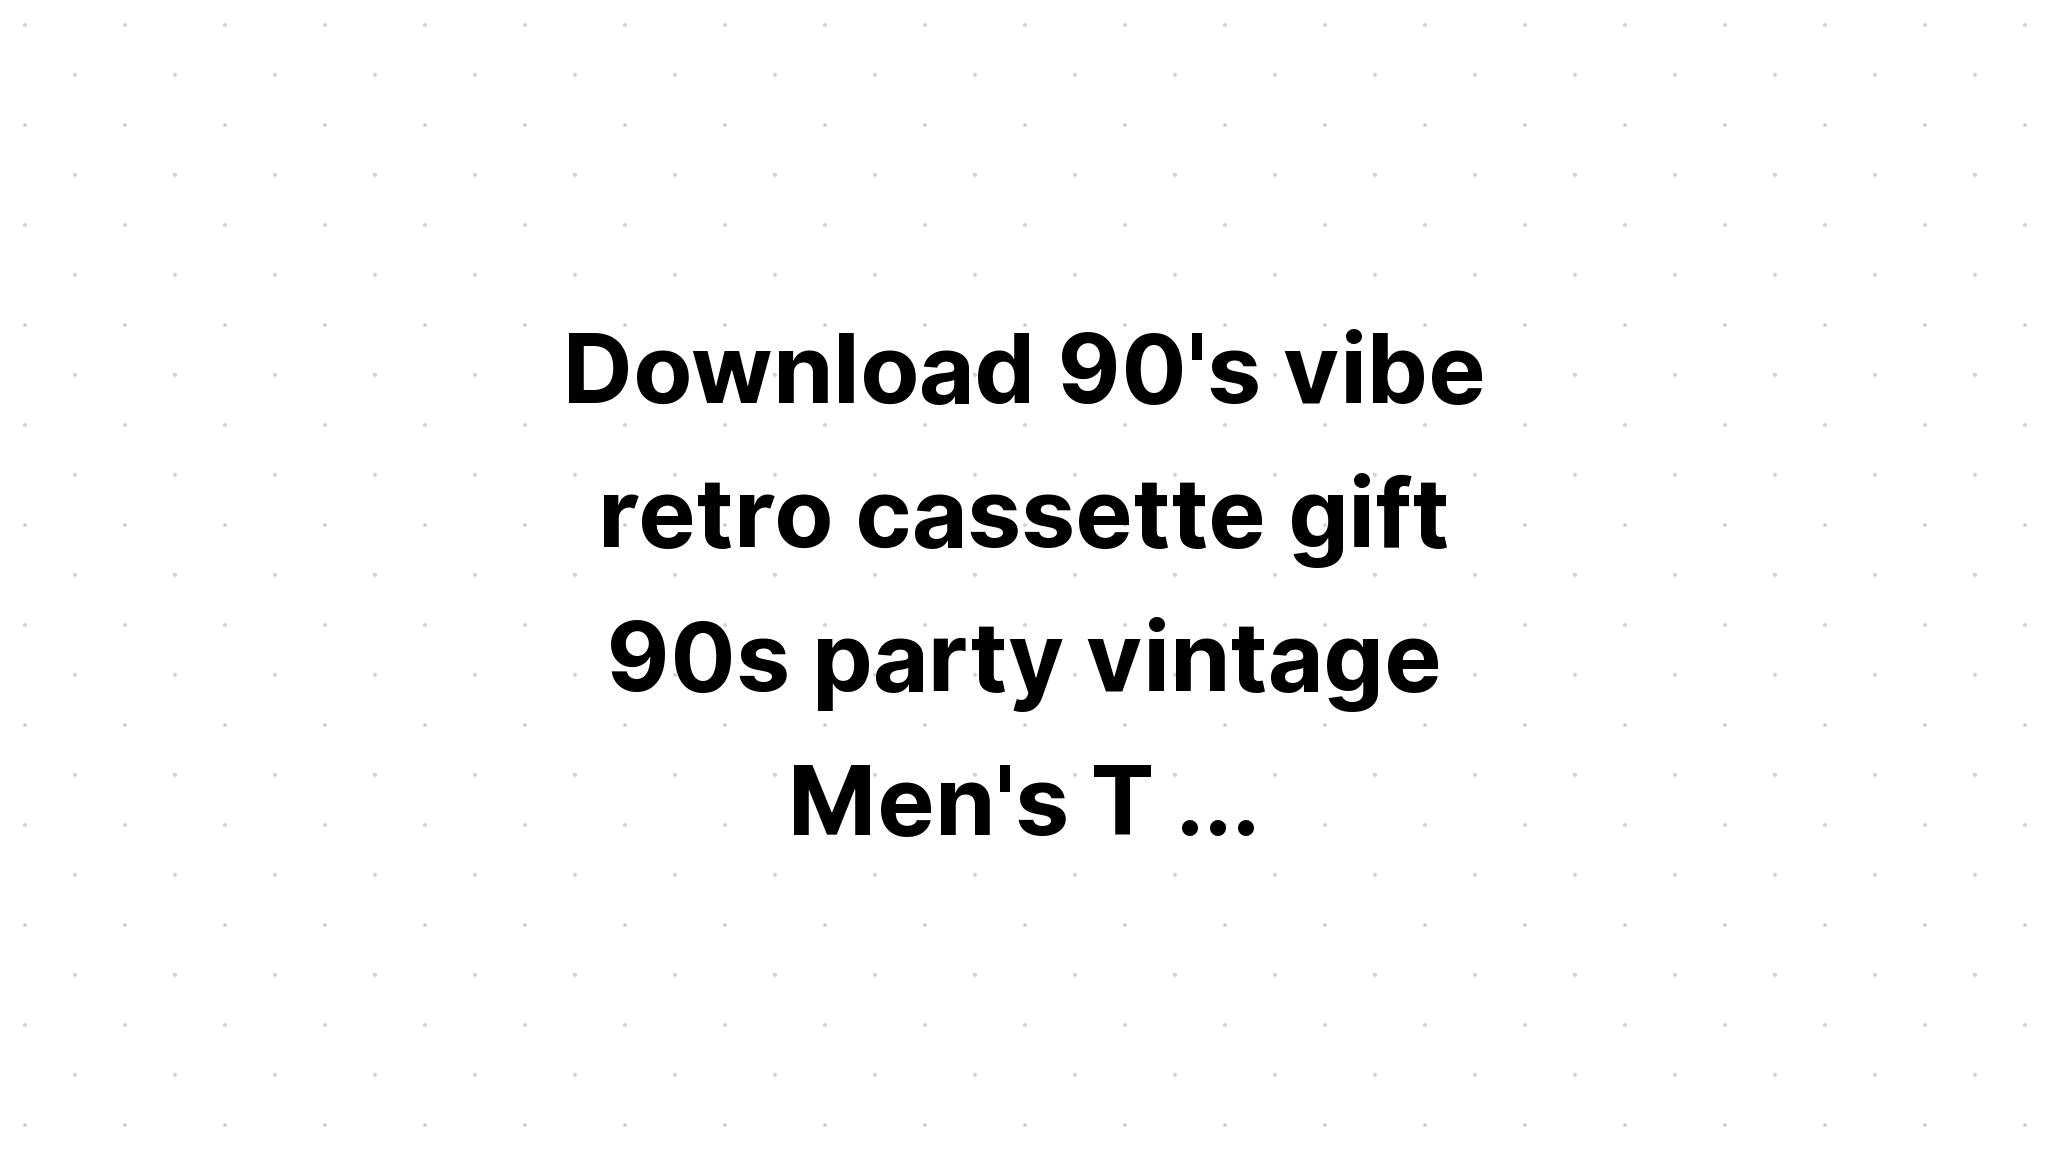 Download 90S Vibe Cassette SVG File